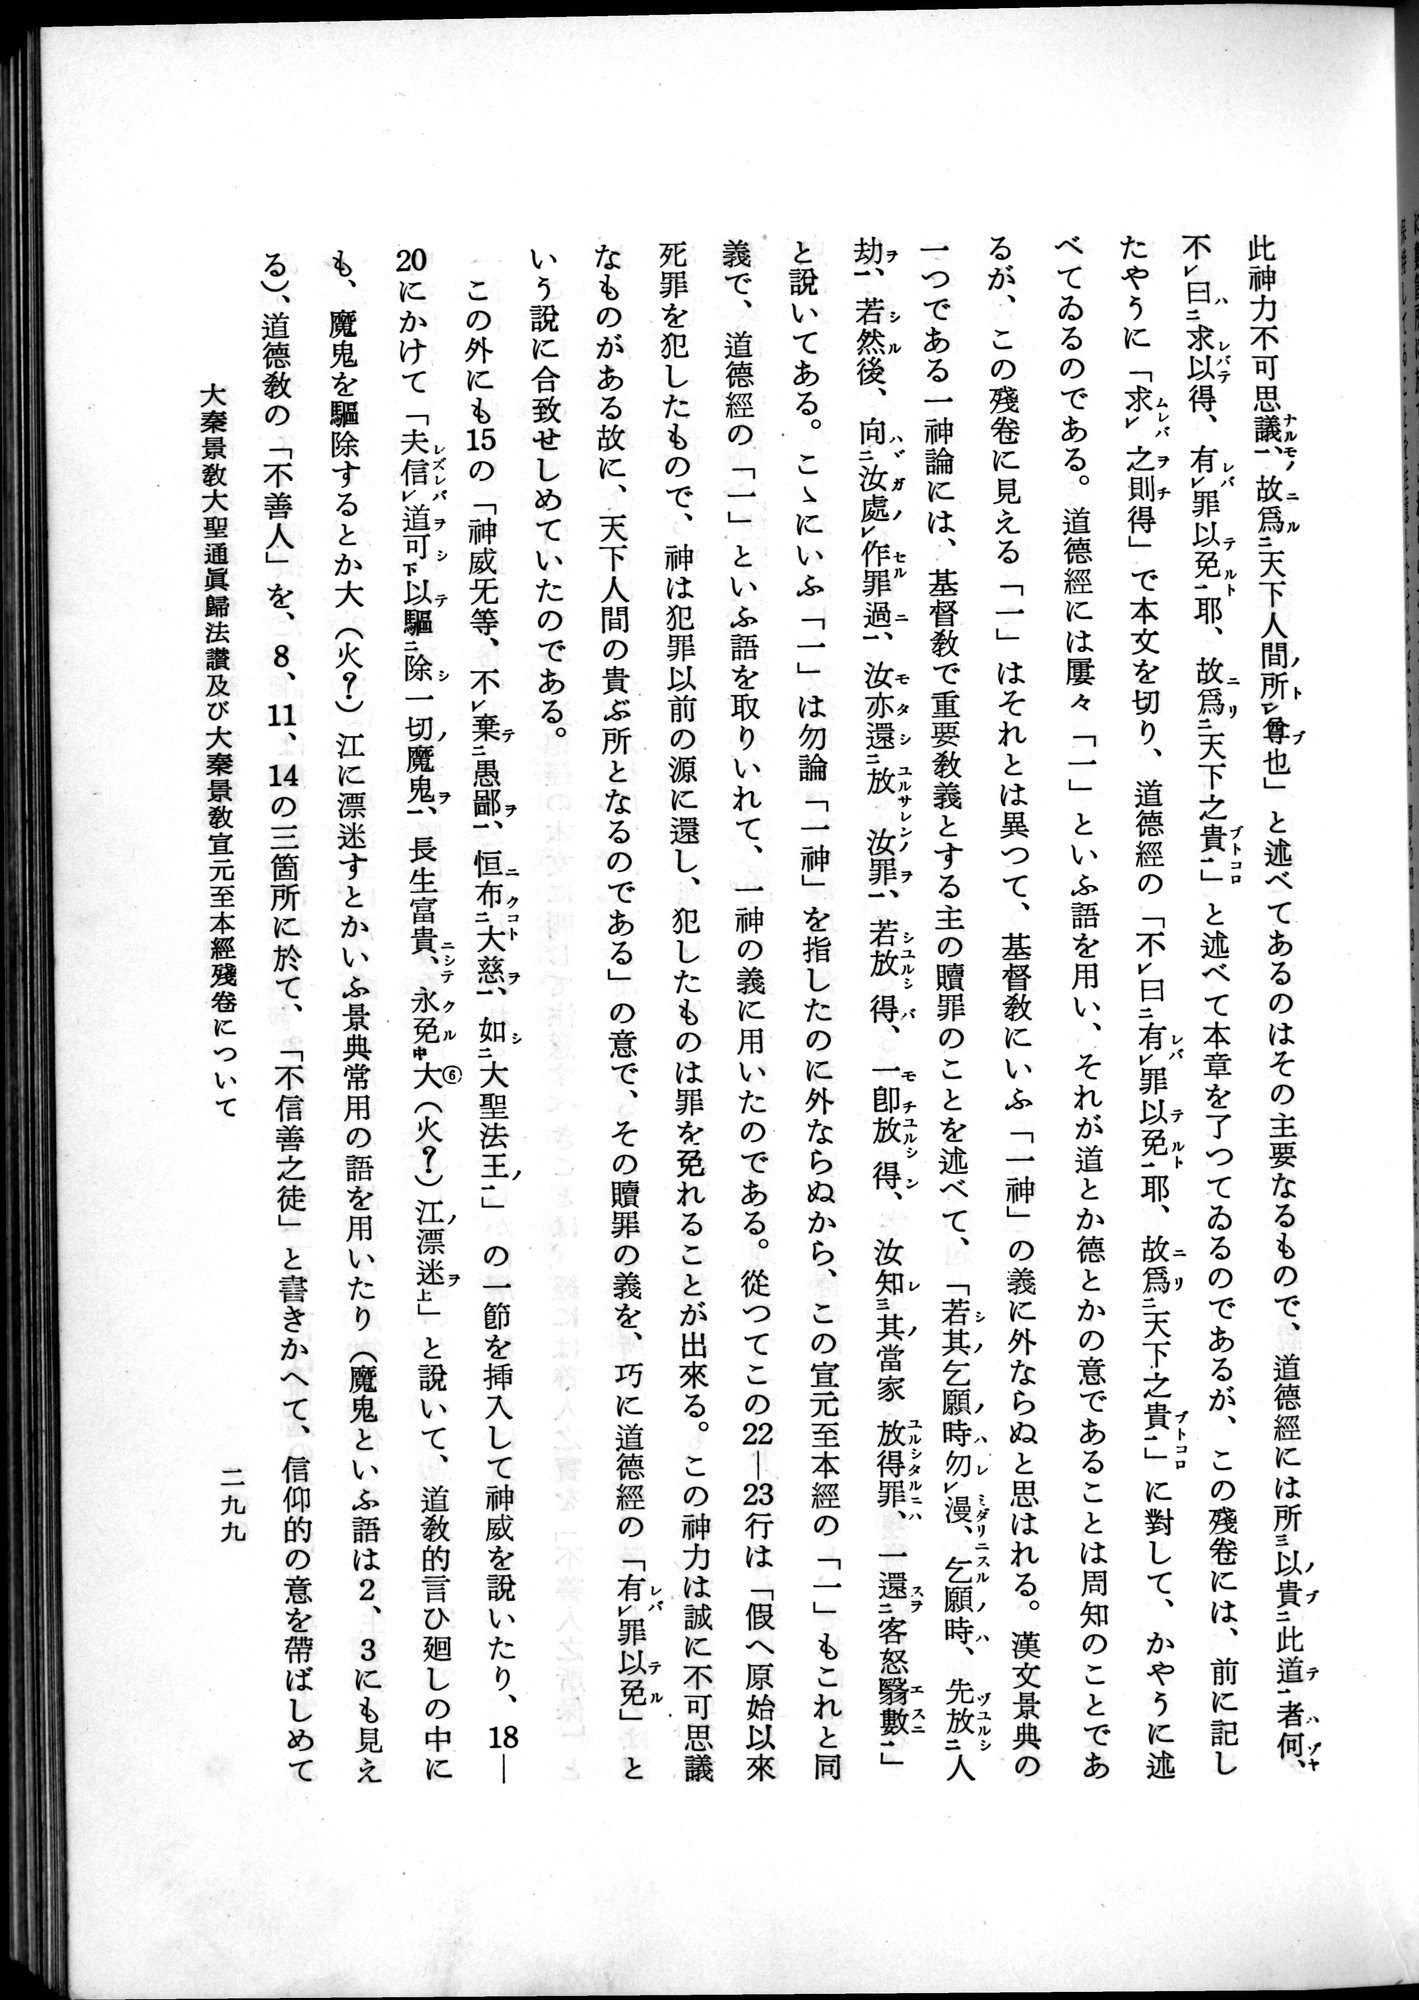 羽田博士史学論文集 : vol.2 / Page 361 (Grayscale High Resolution Image)